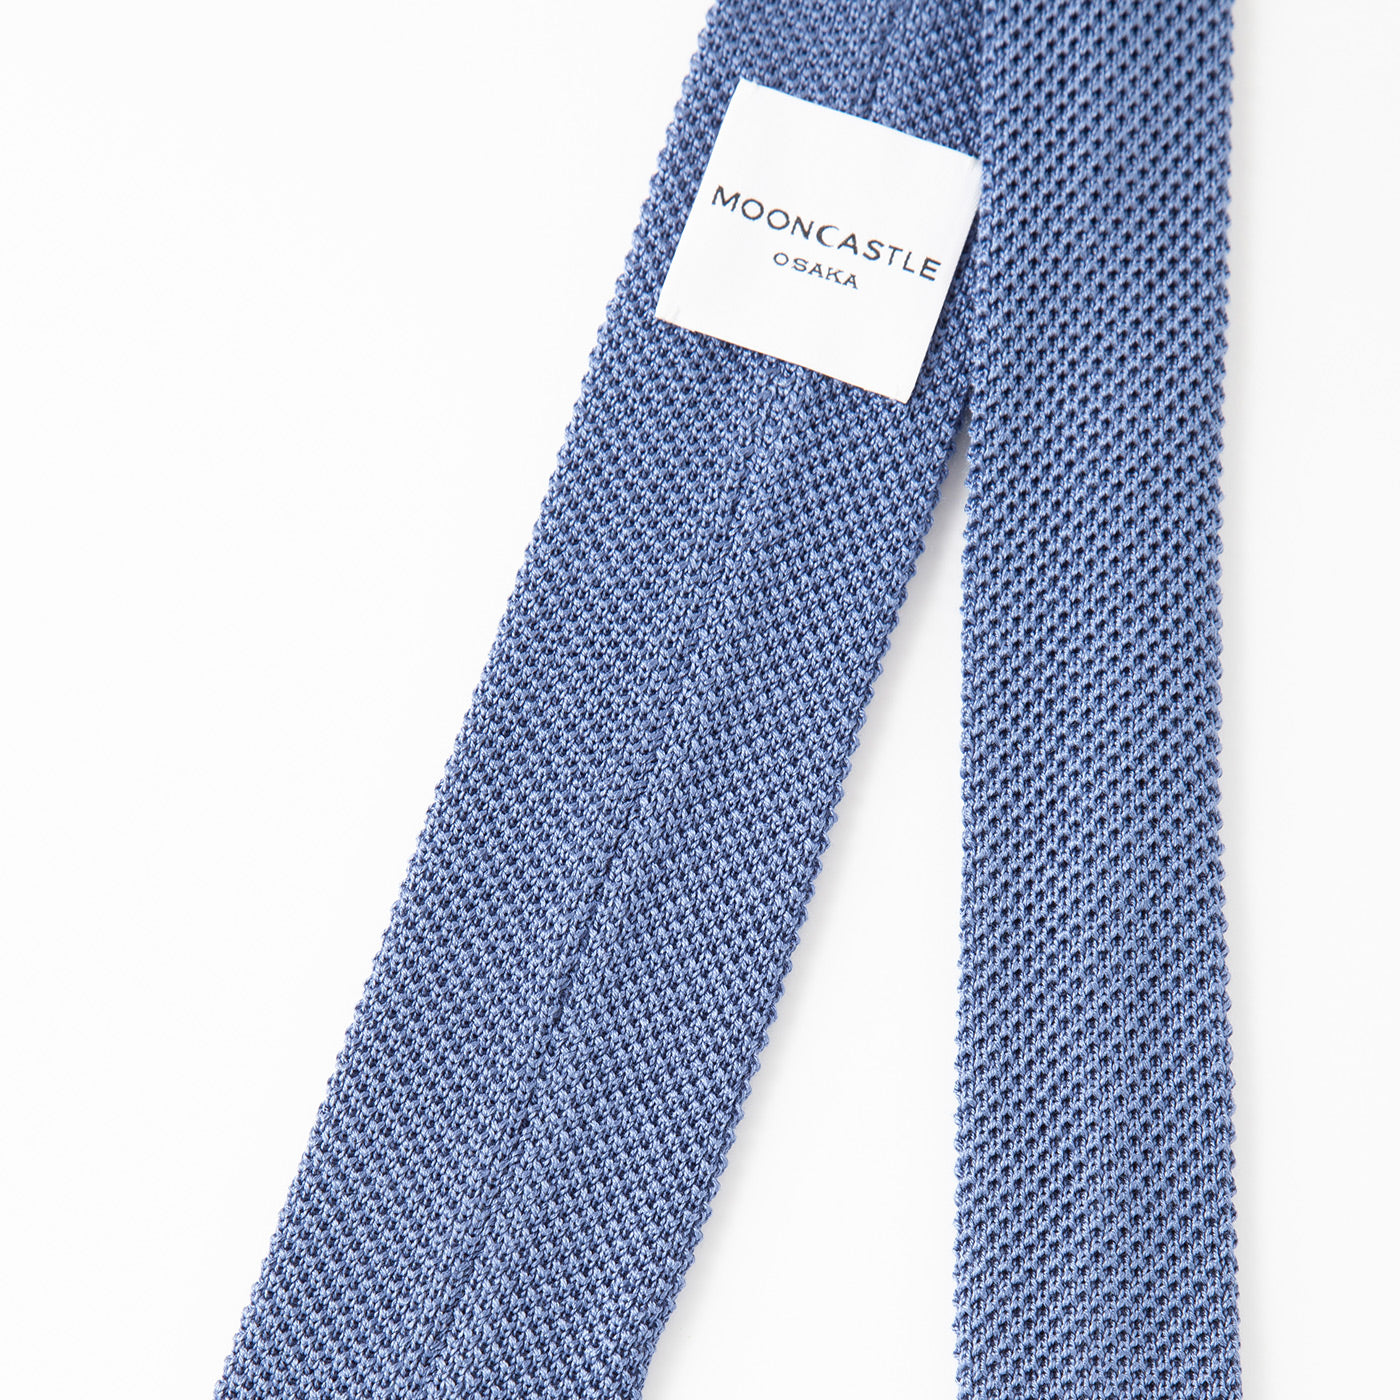 Silk Knit Tie